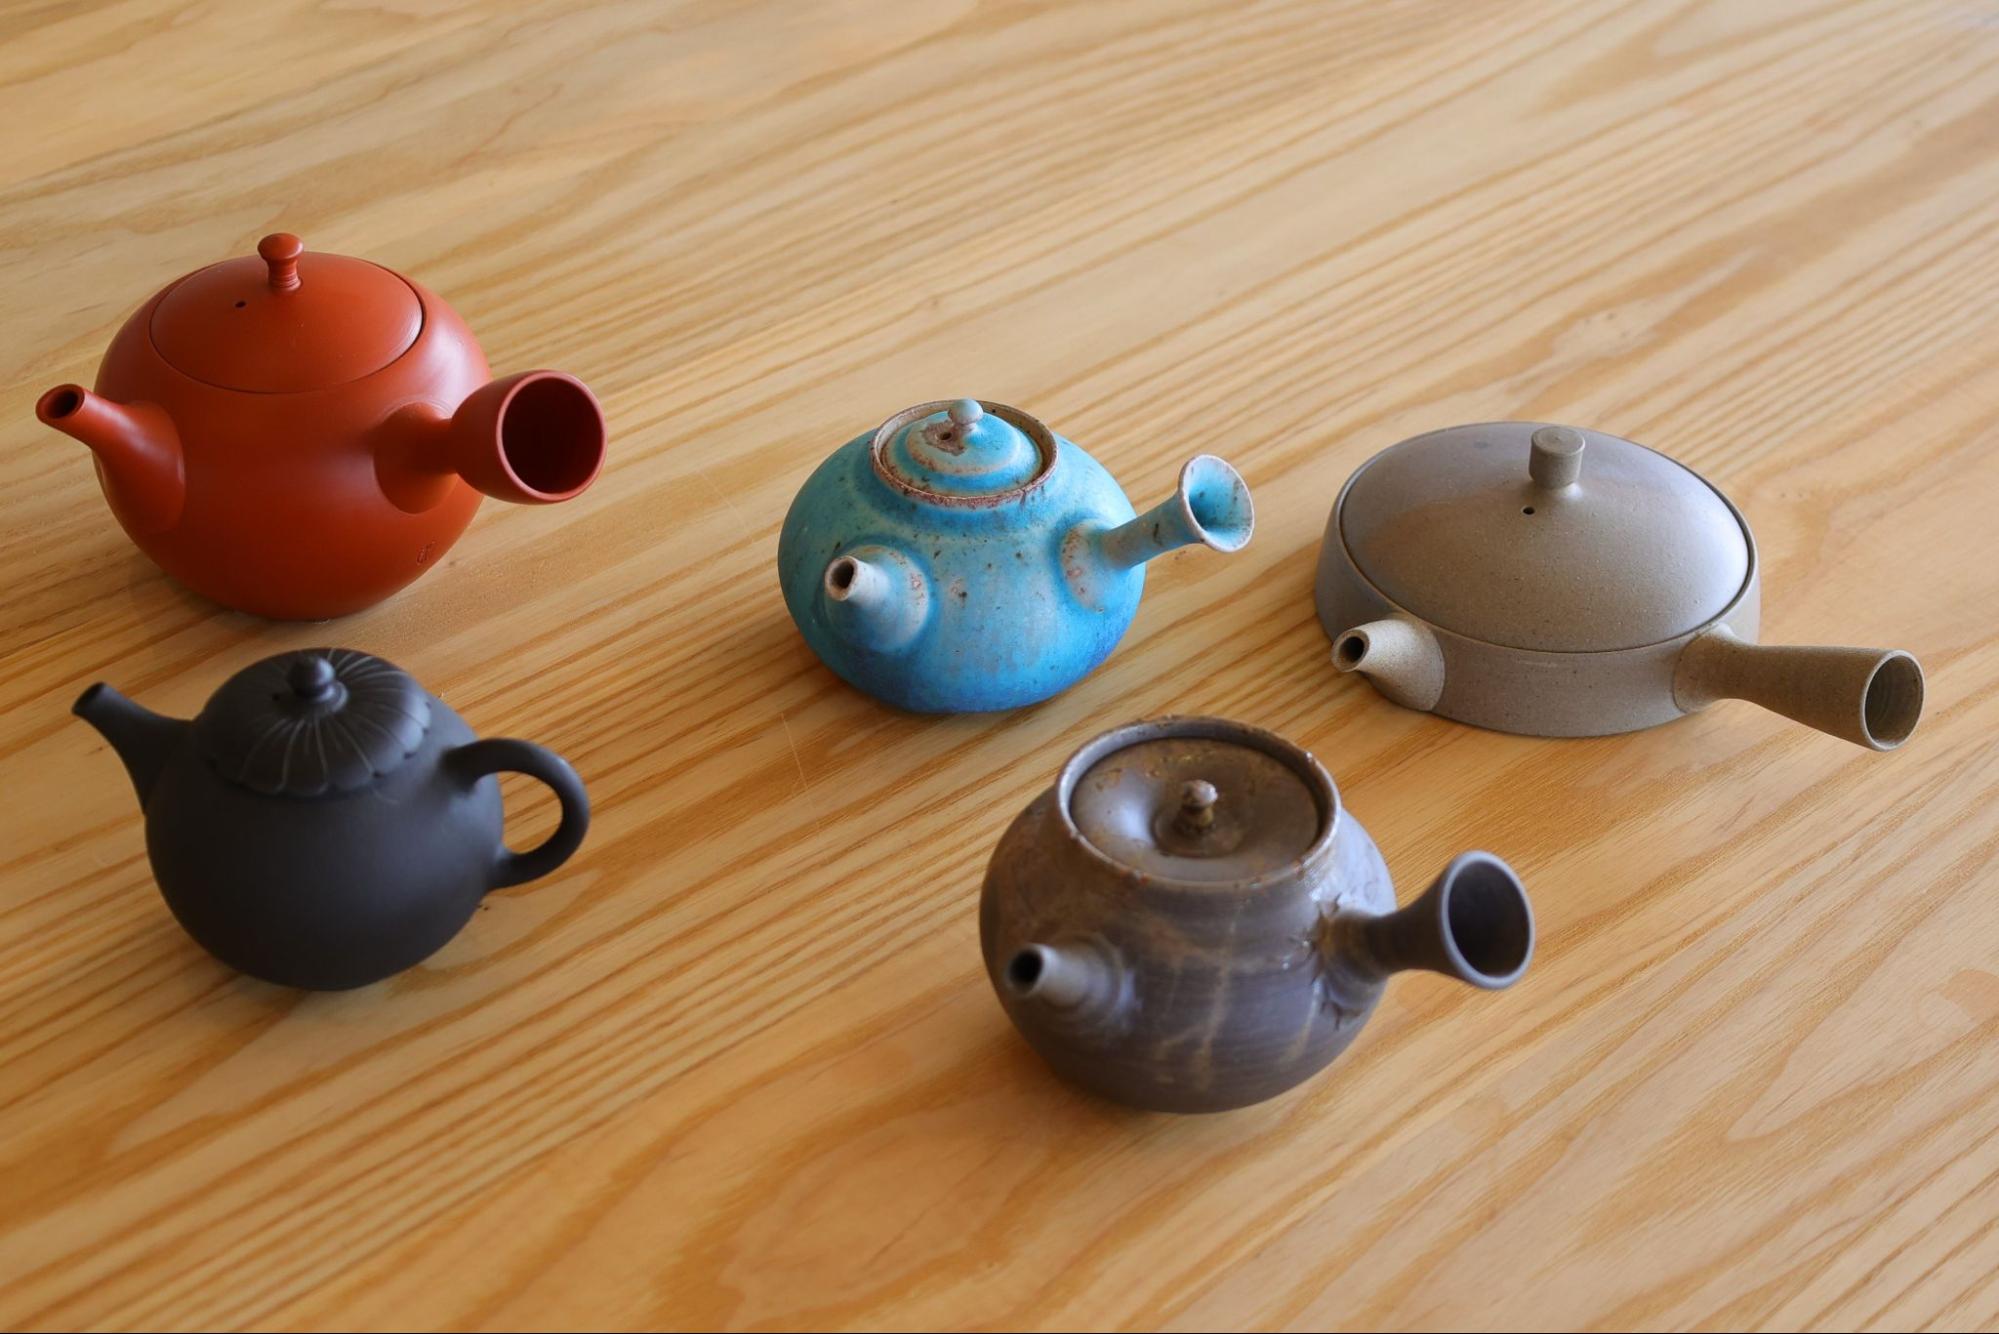 &quot;Ấm trà và bình Isobe&quot; truyền tải sự quyến rũ của đồ gốm Tokoname. Chúng tôi có rất nhiều loại ấm chén, từ ấm trà truyền thống đến ấm trà hiện đại.